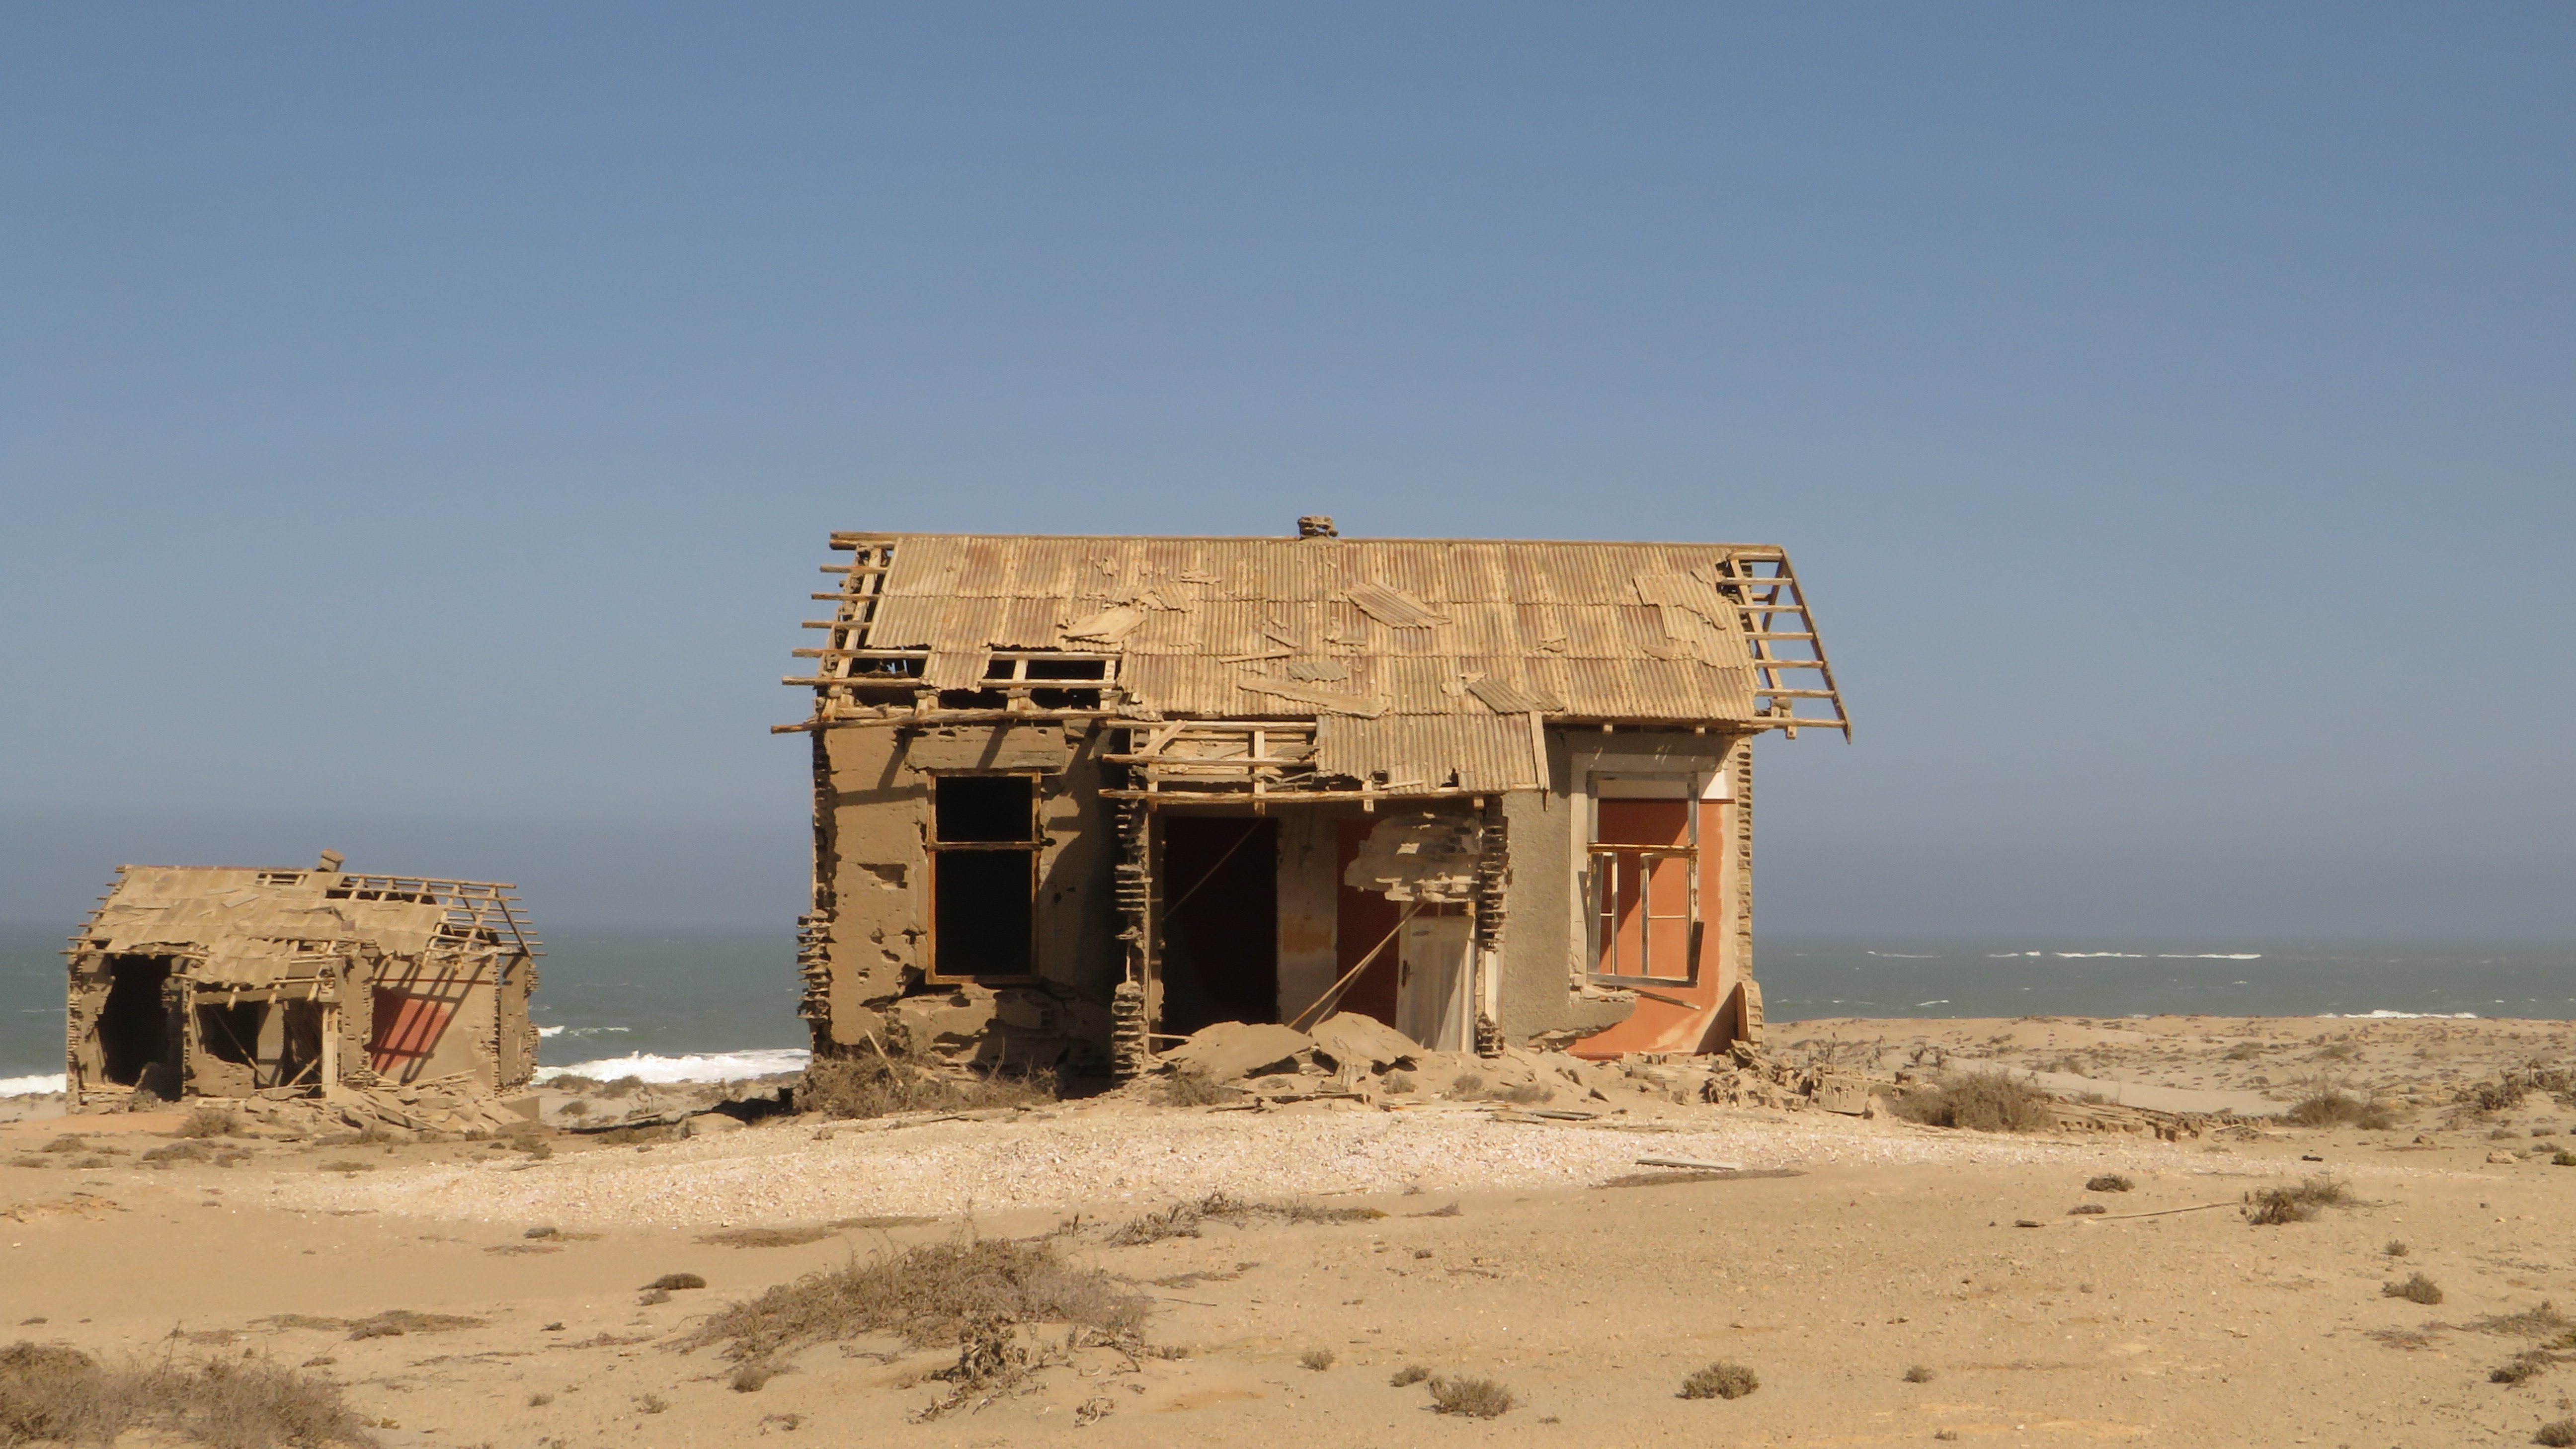 Abandoned house in Elizabeth Bay Diamond Mine, Namibia